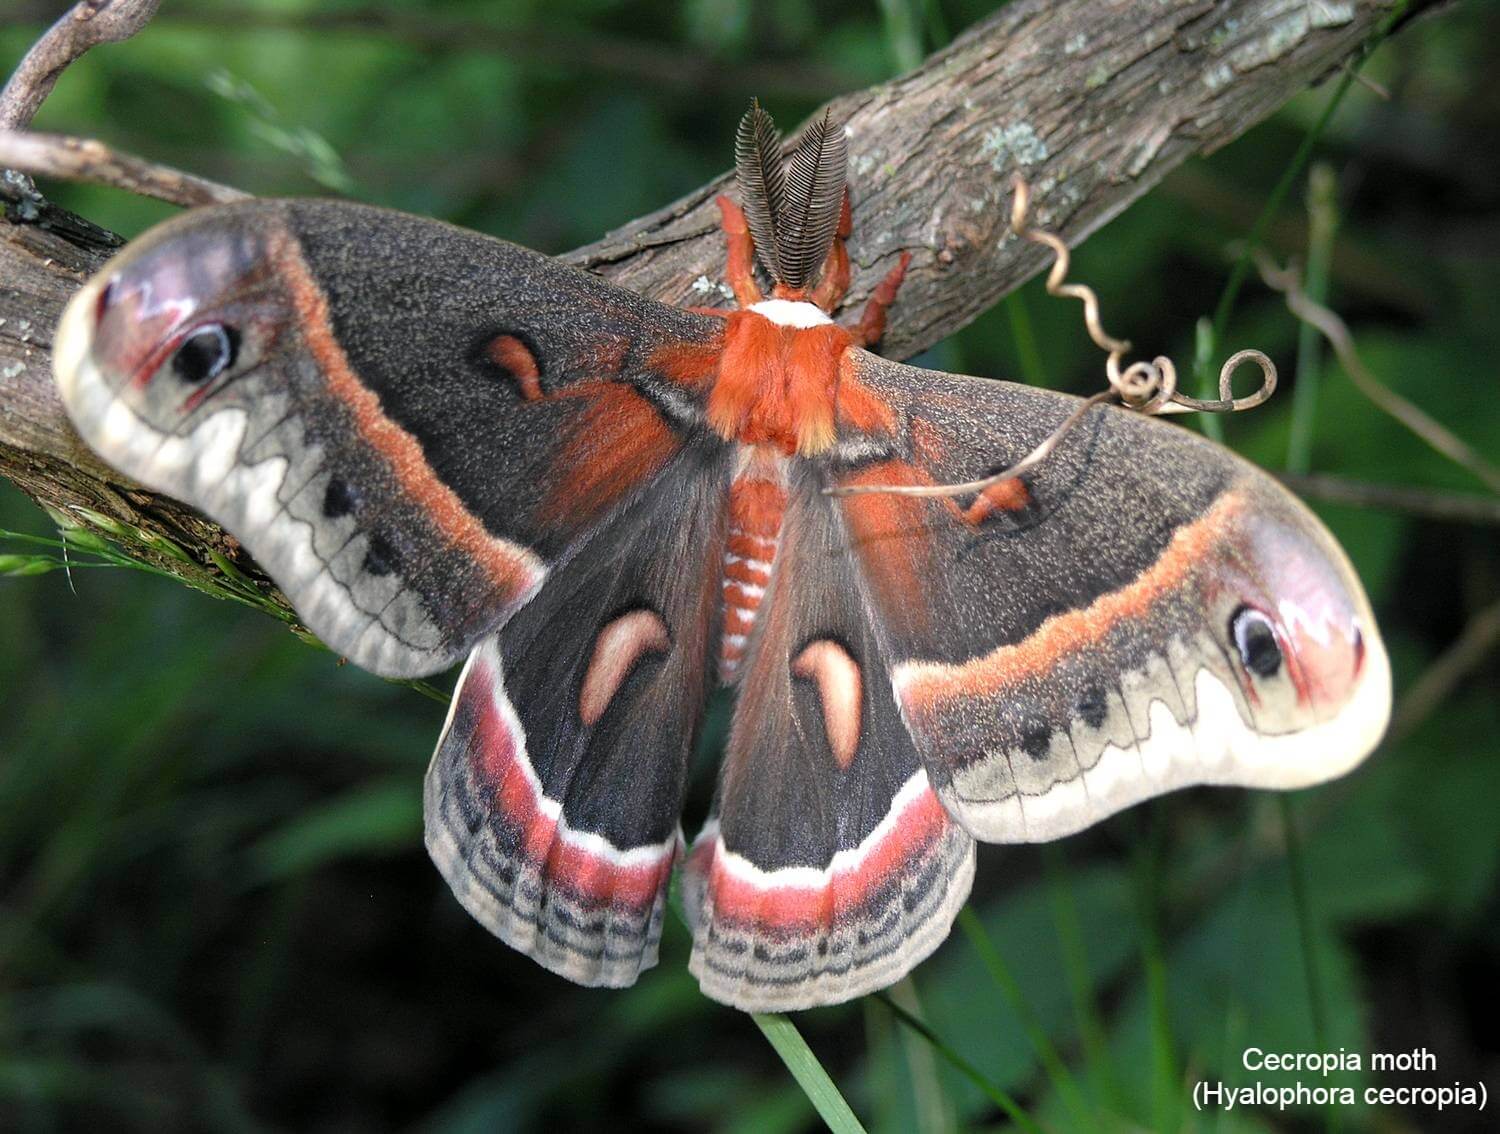 Cecropia moth (Hyalophora cecropia)